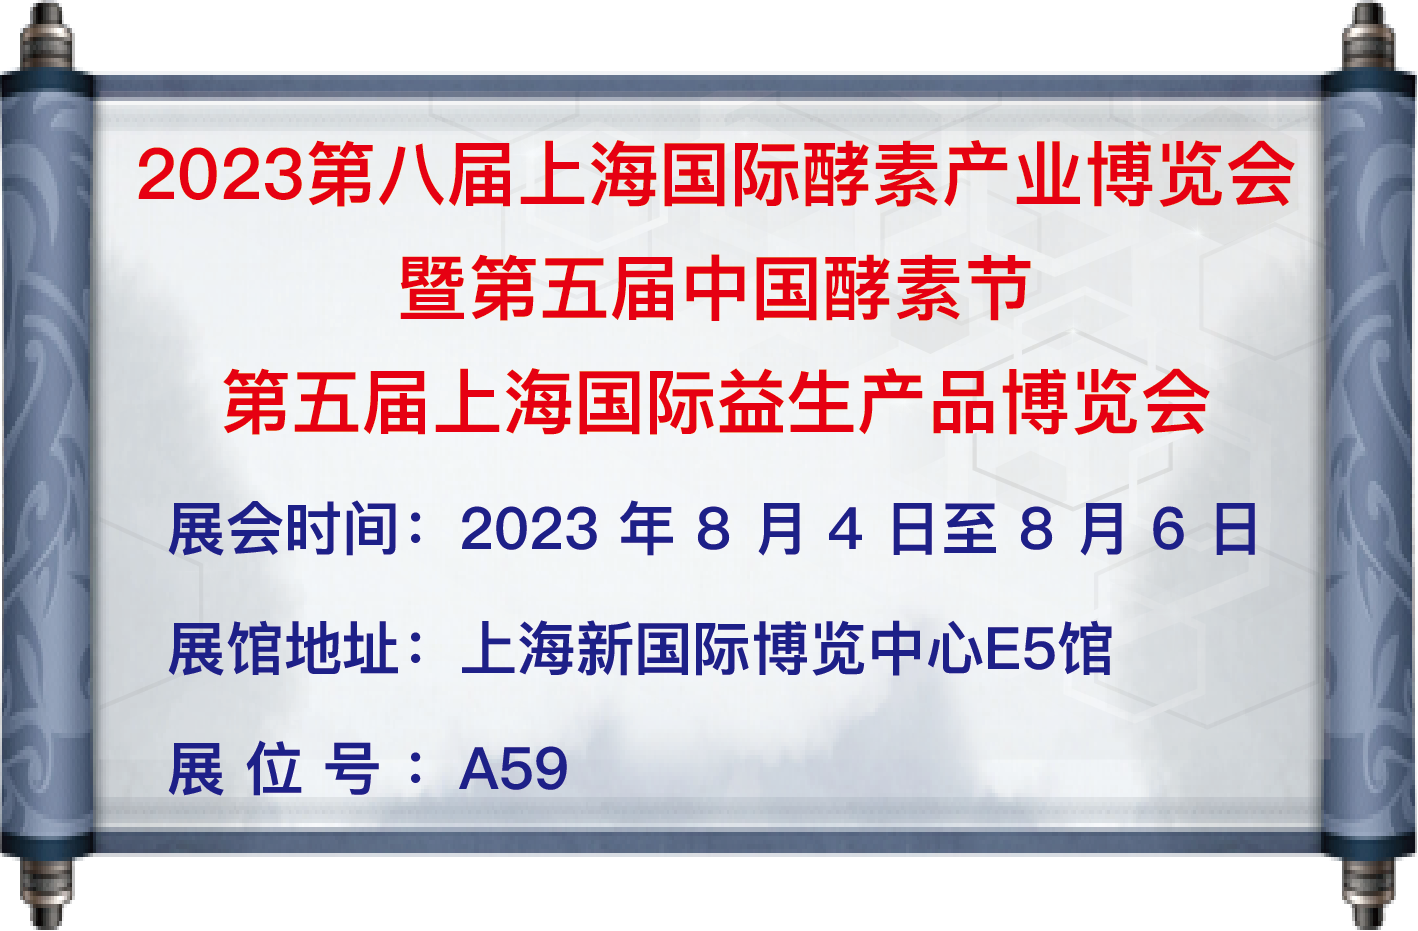 我司于8月4日至6日參加【第八屆上海國際酵素產業博覽會暨第五屆中國酵素節】，地址：上海新國際博覽中心E5館，歡迎大家蒞臨參觀！